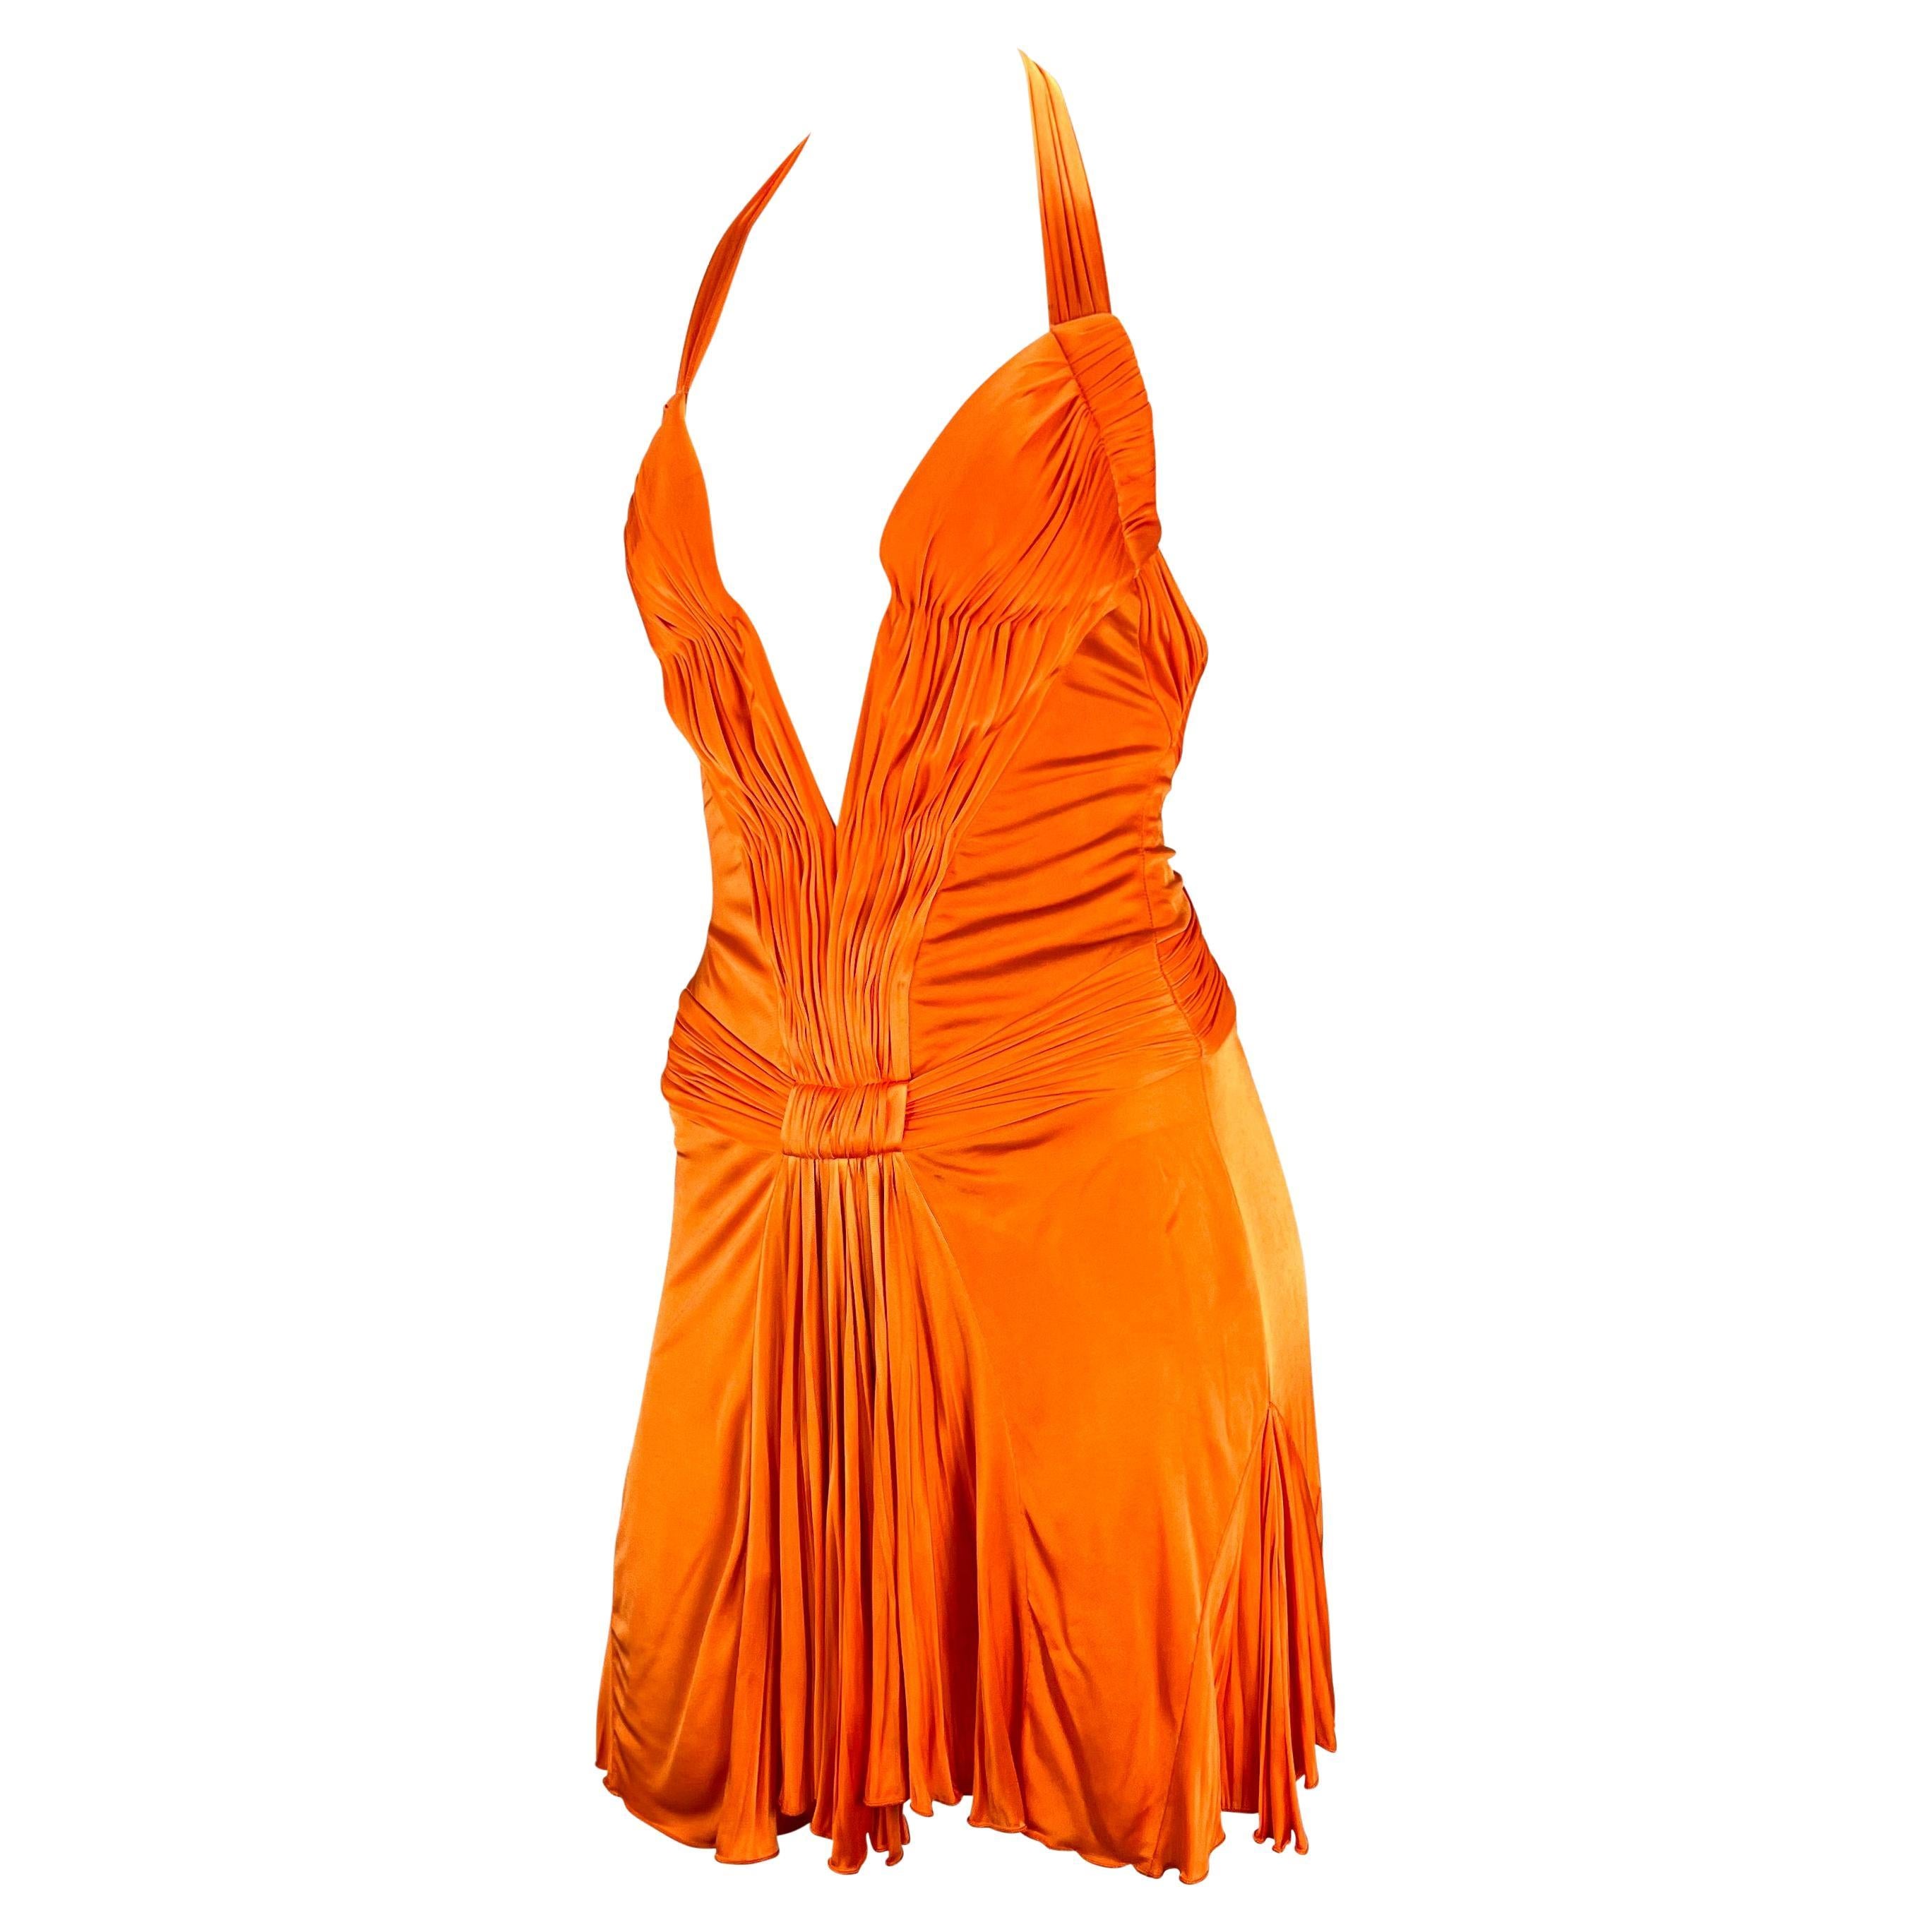 Présentant une mini robe plongeante orange vif de Roberto Cavalli. Issue de la collection printemps/été 2005, cette belle robe pleine de vie présente un décolleté plongeant rigide et profond, un dos semi-exposé et des détails ruchés. Absolument